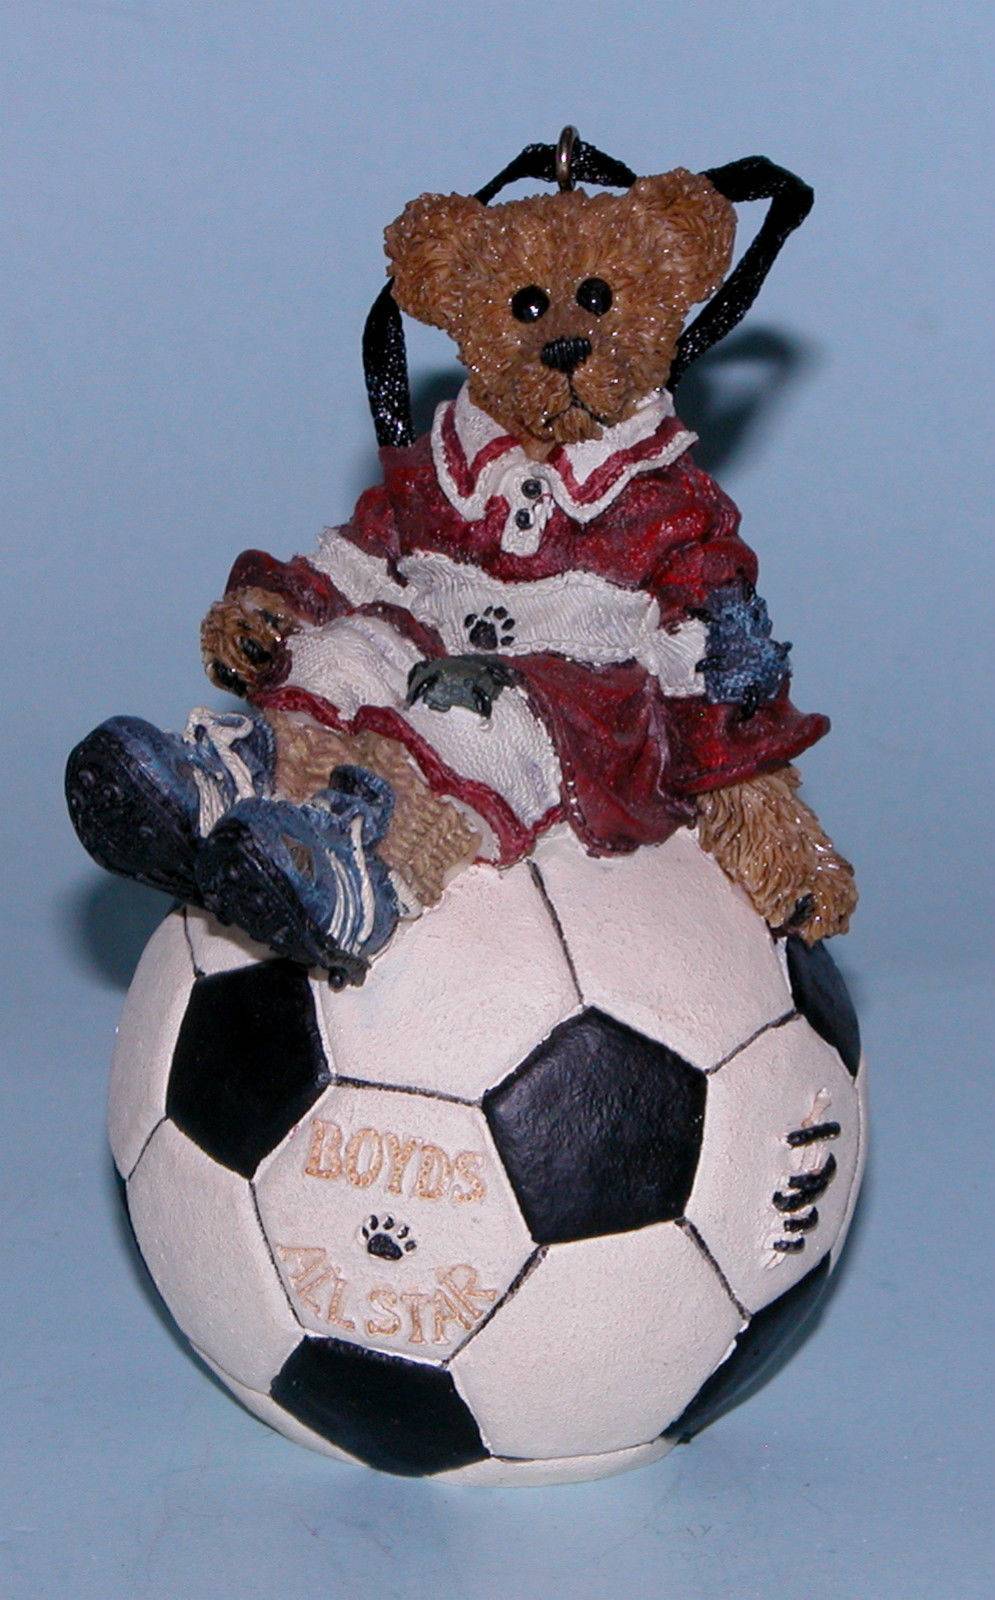 Rocky...Score, Score, Score-Boyds Bears Bearstone Soccer Ornament #25704 *